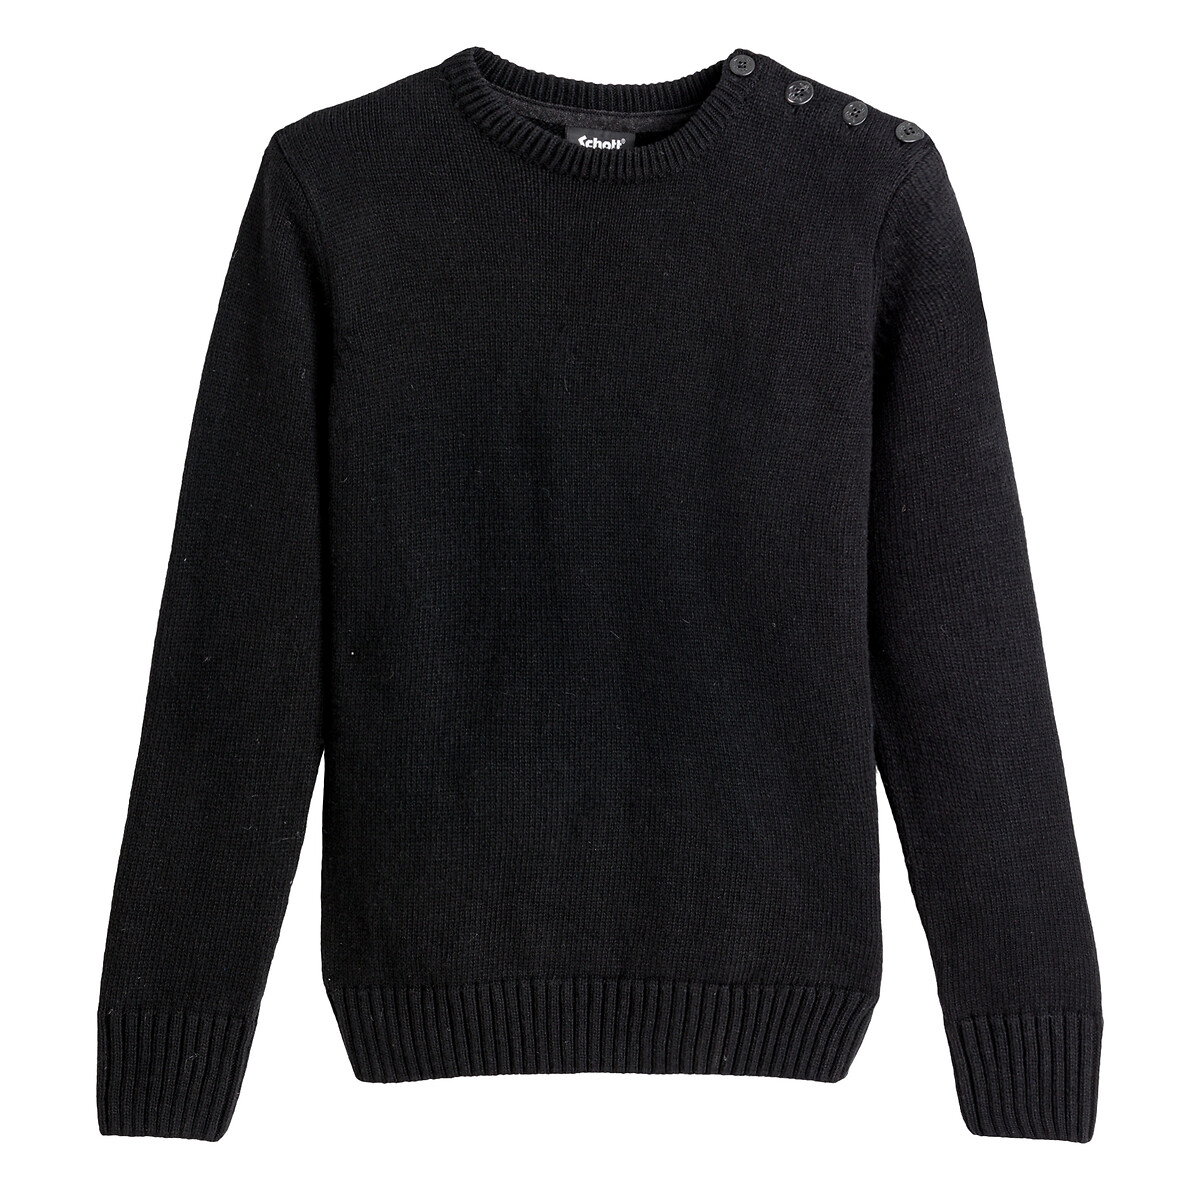 Пуловер Из плотного трикотажа PL OUTRIDER 1 L черный